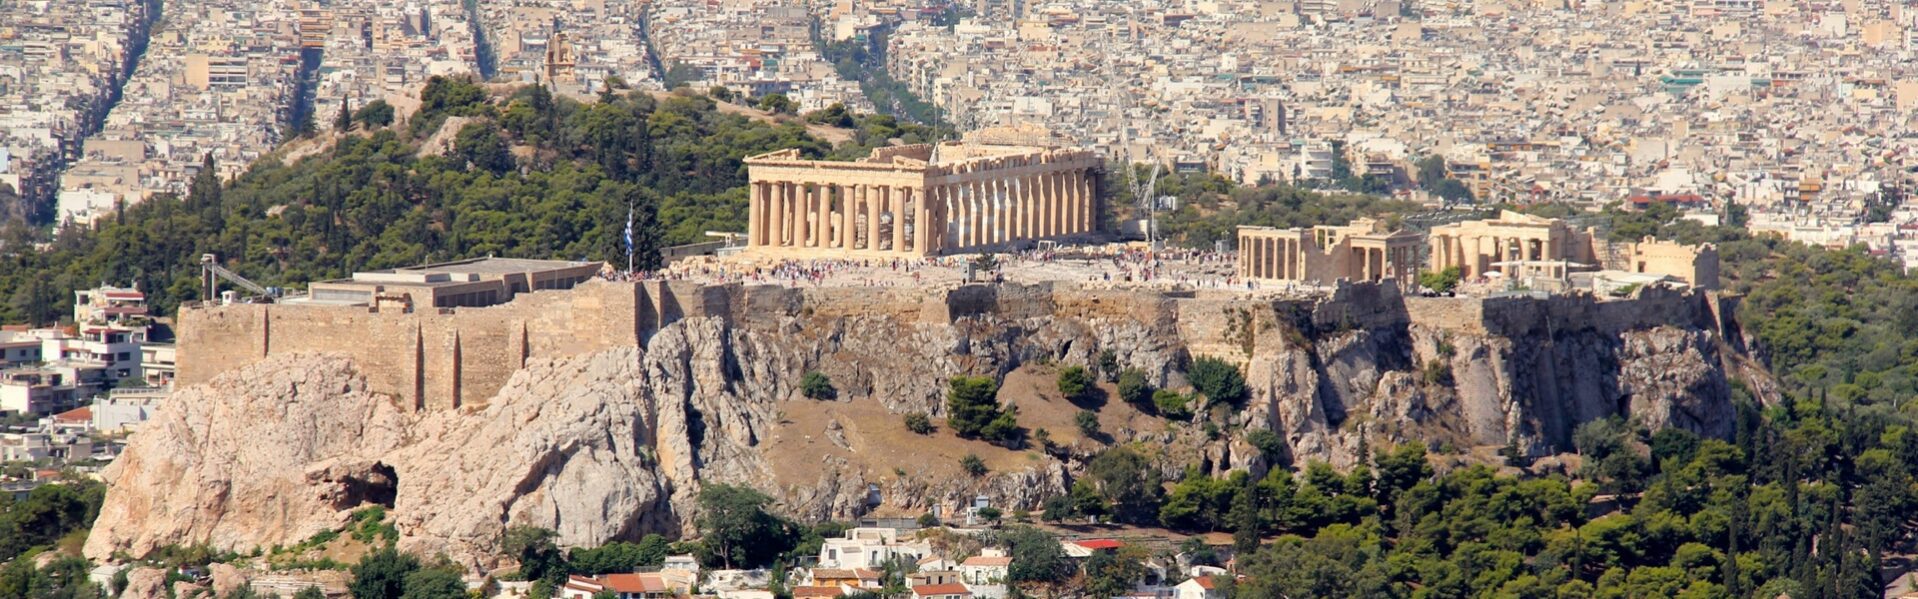 Griekenland reisinformatie voor jouw vakantie